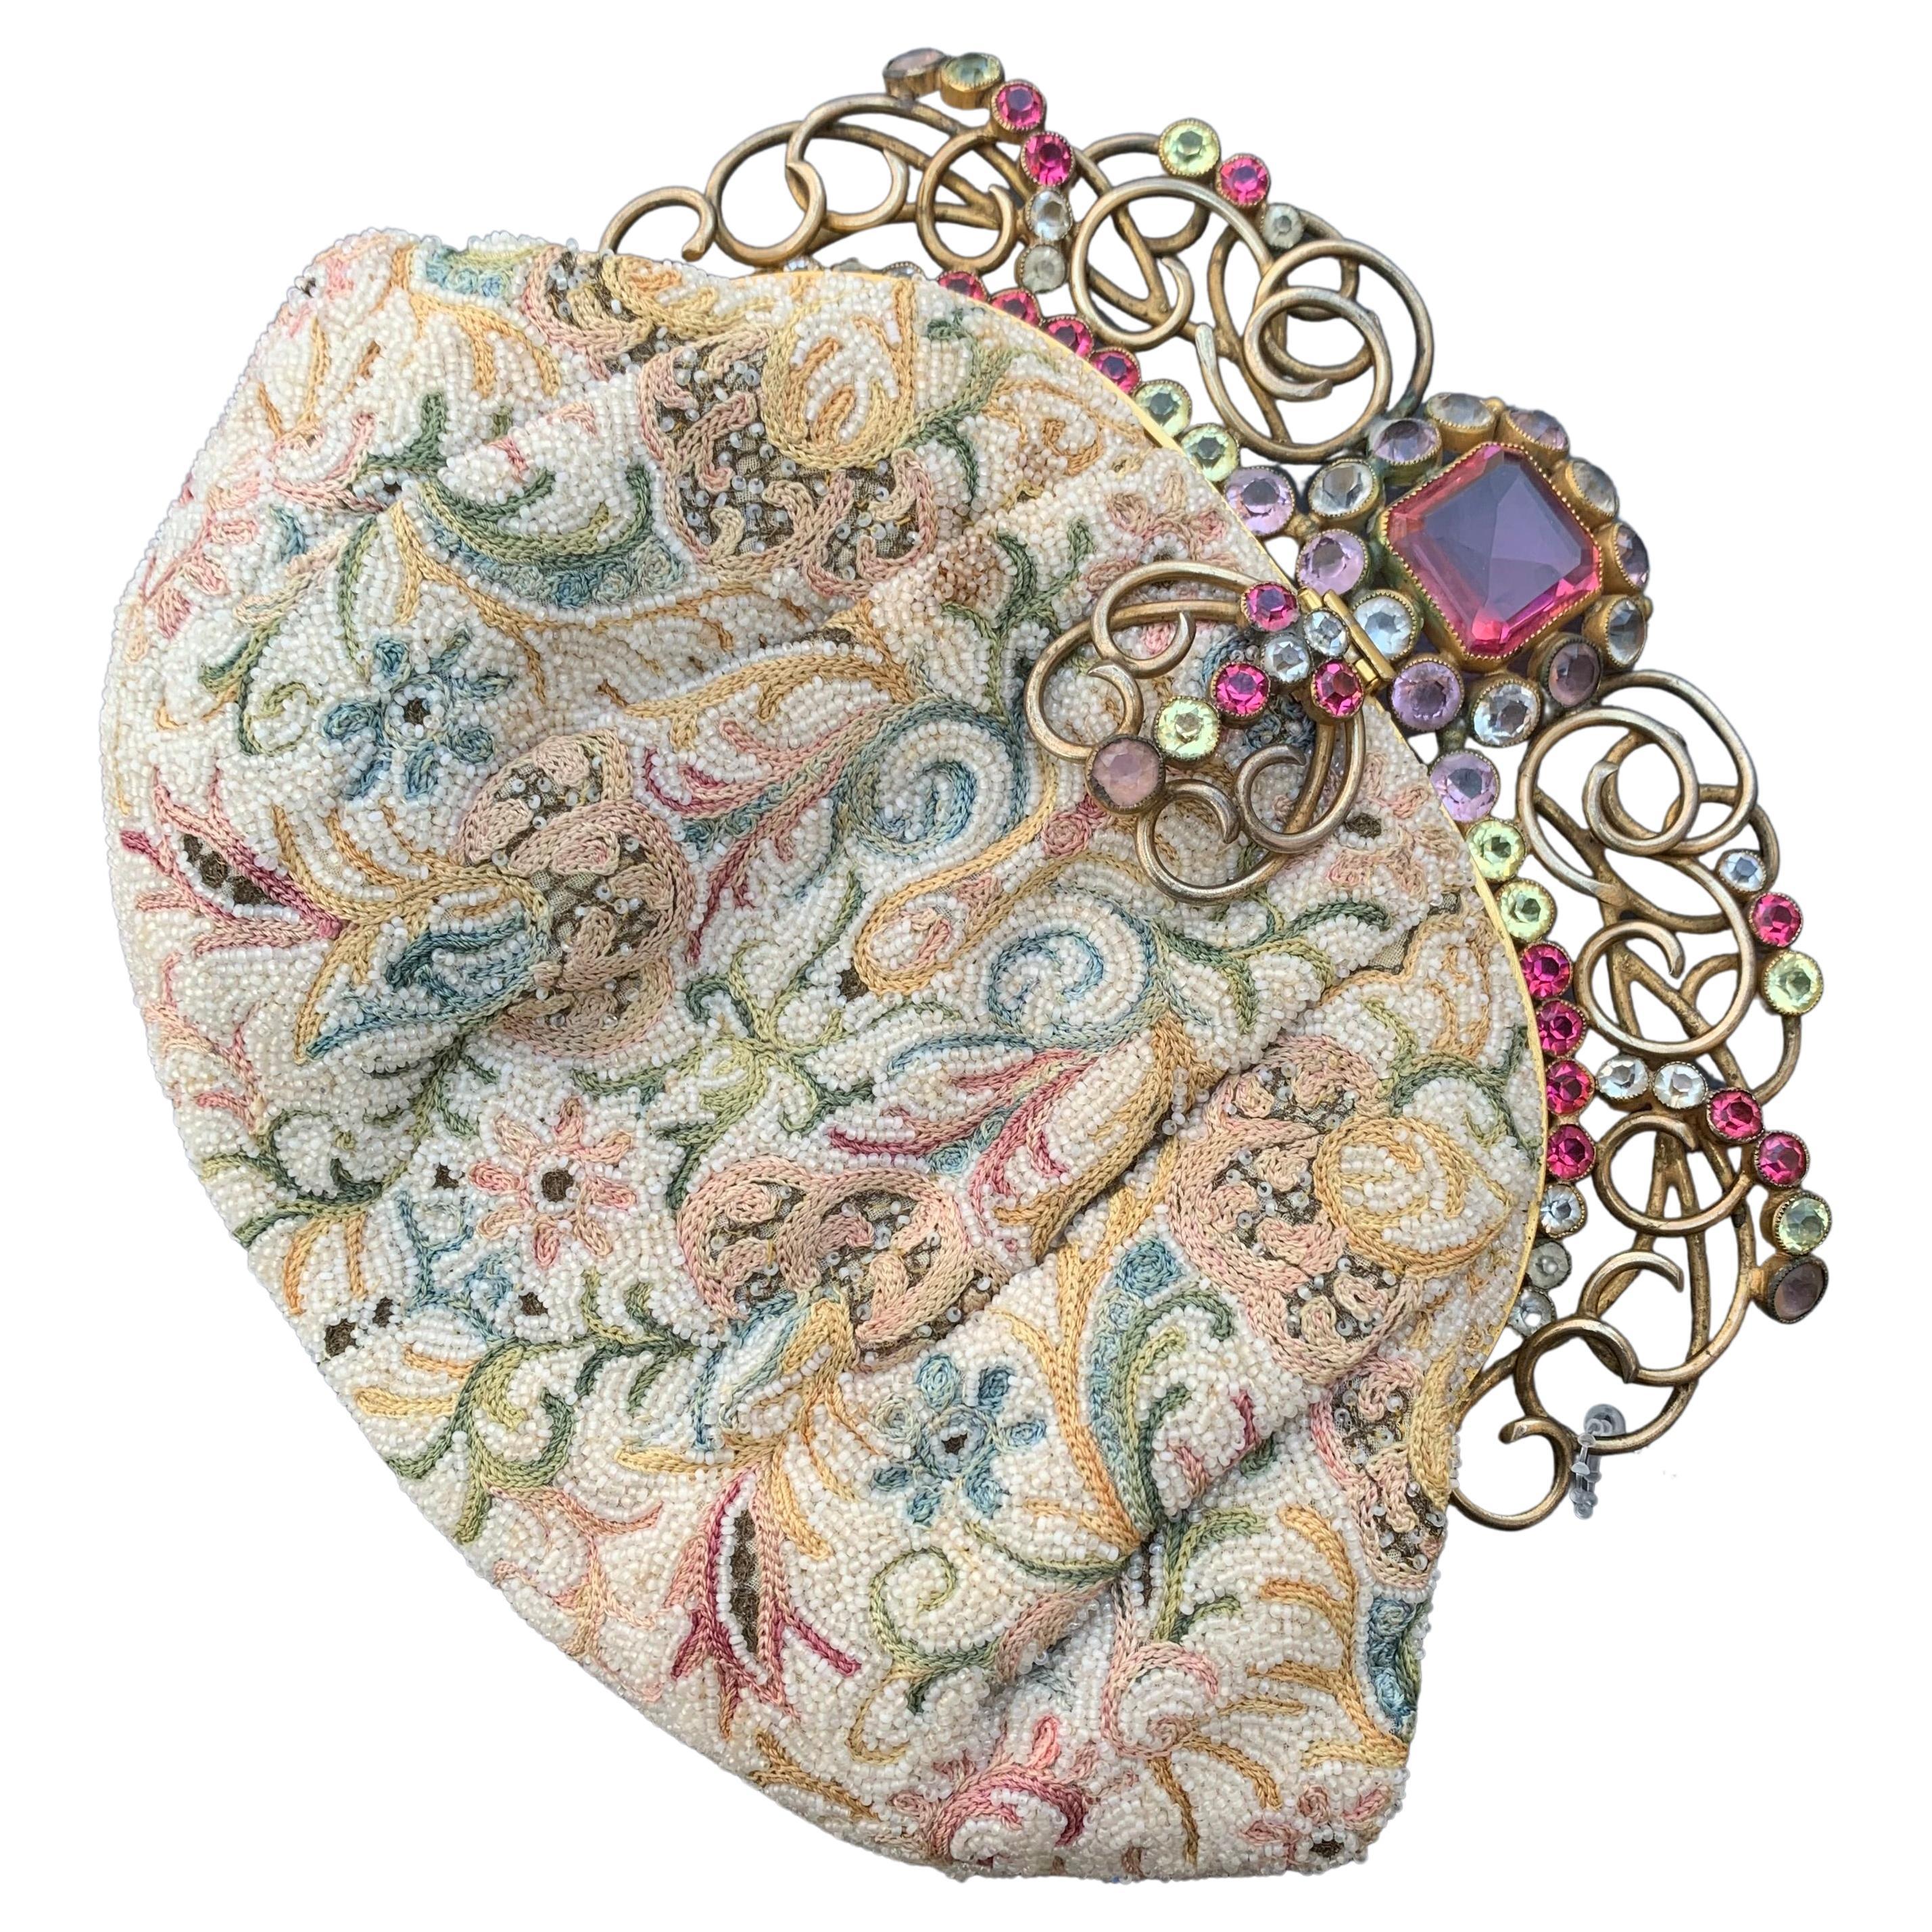 Josef Embroidery Hand Beaded Purse Handbag Jeweled Frame USA For Sale